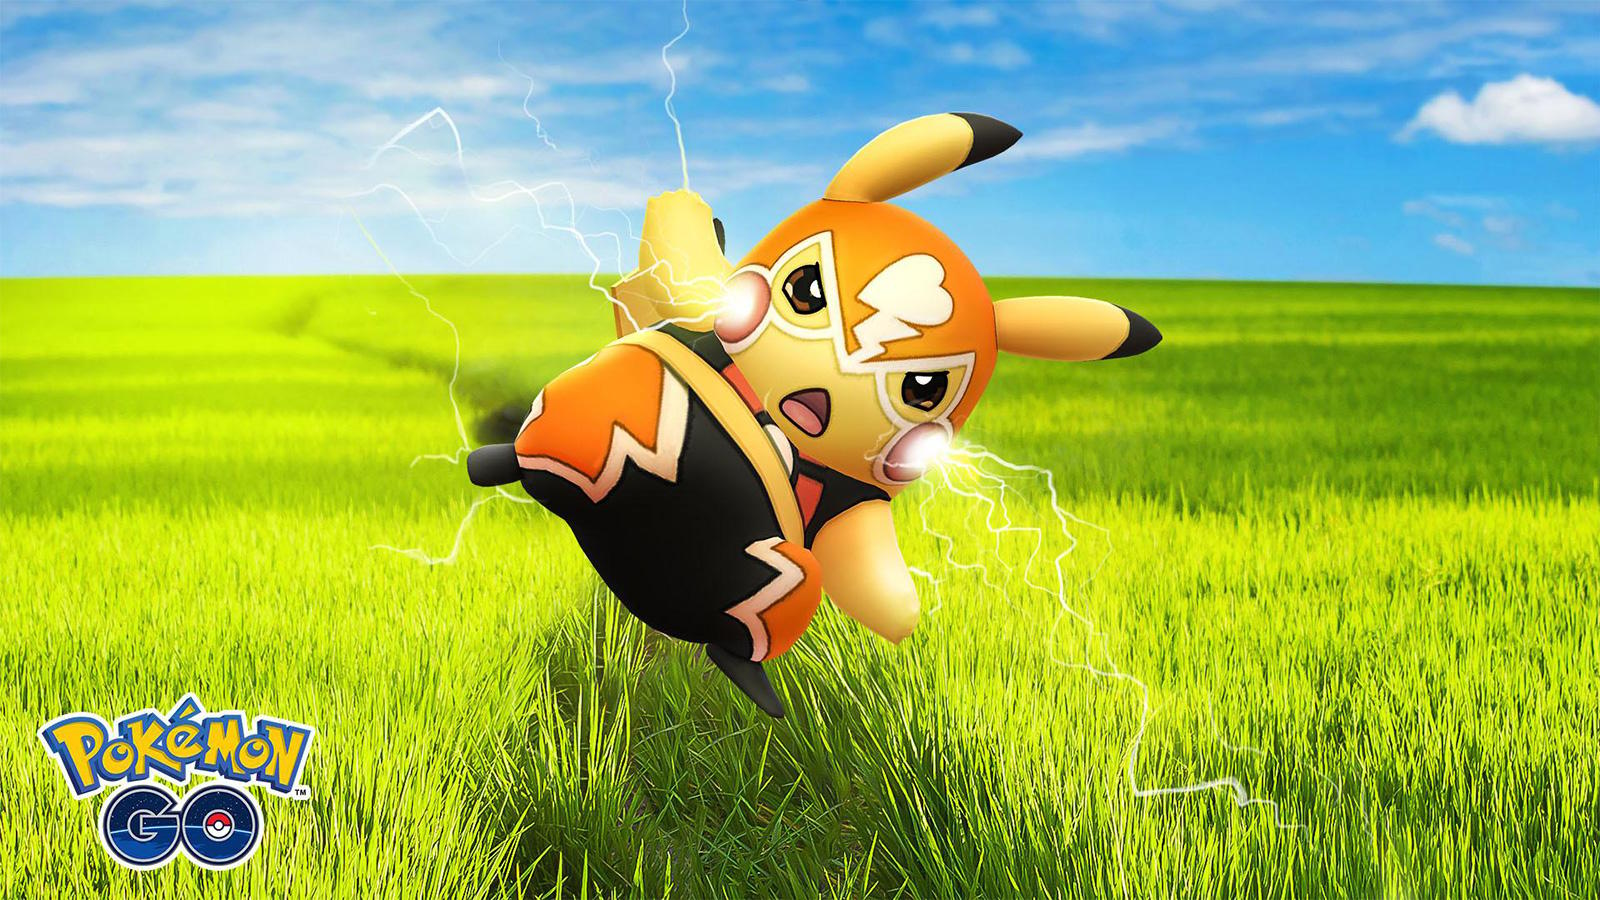 Pikachu libre shiny odds : r/TheSilphArena